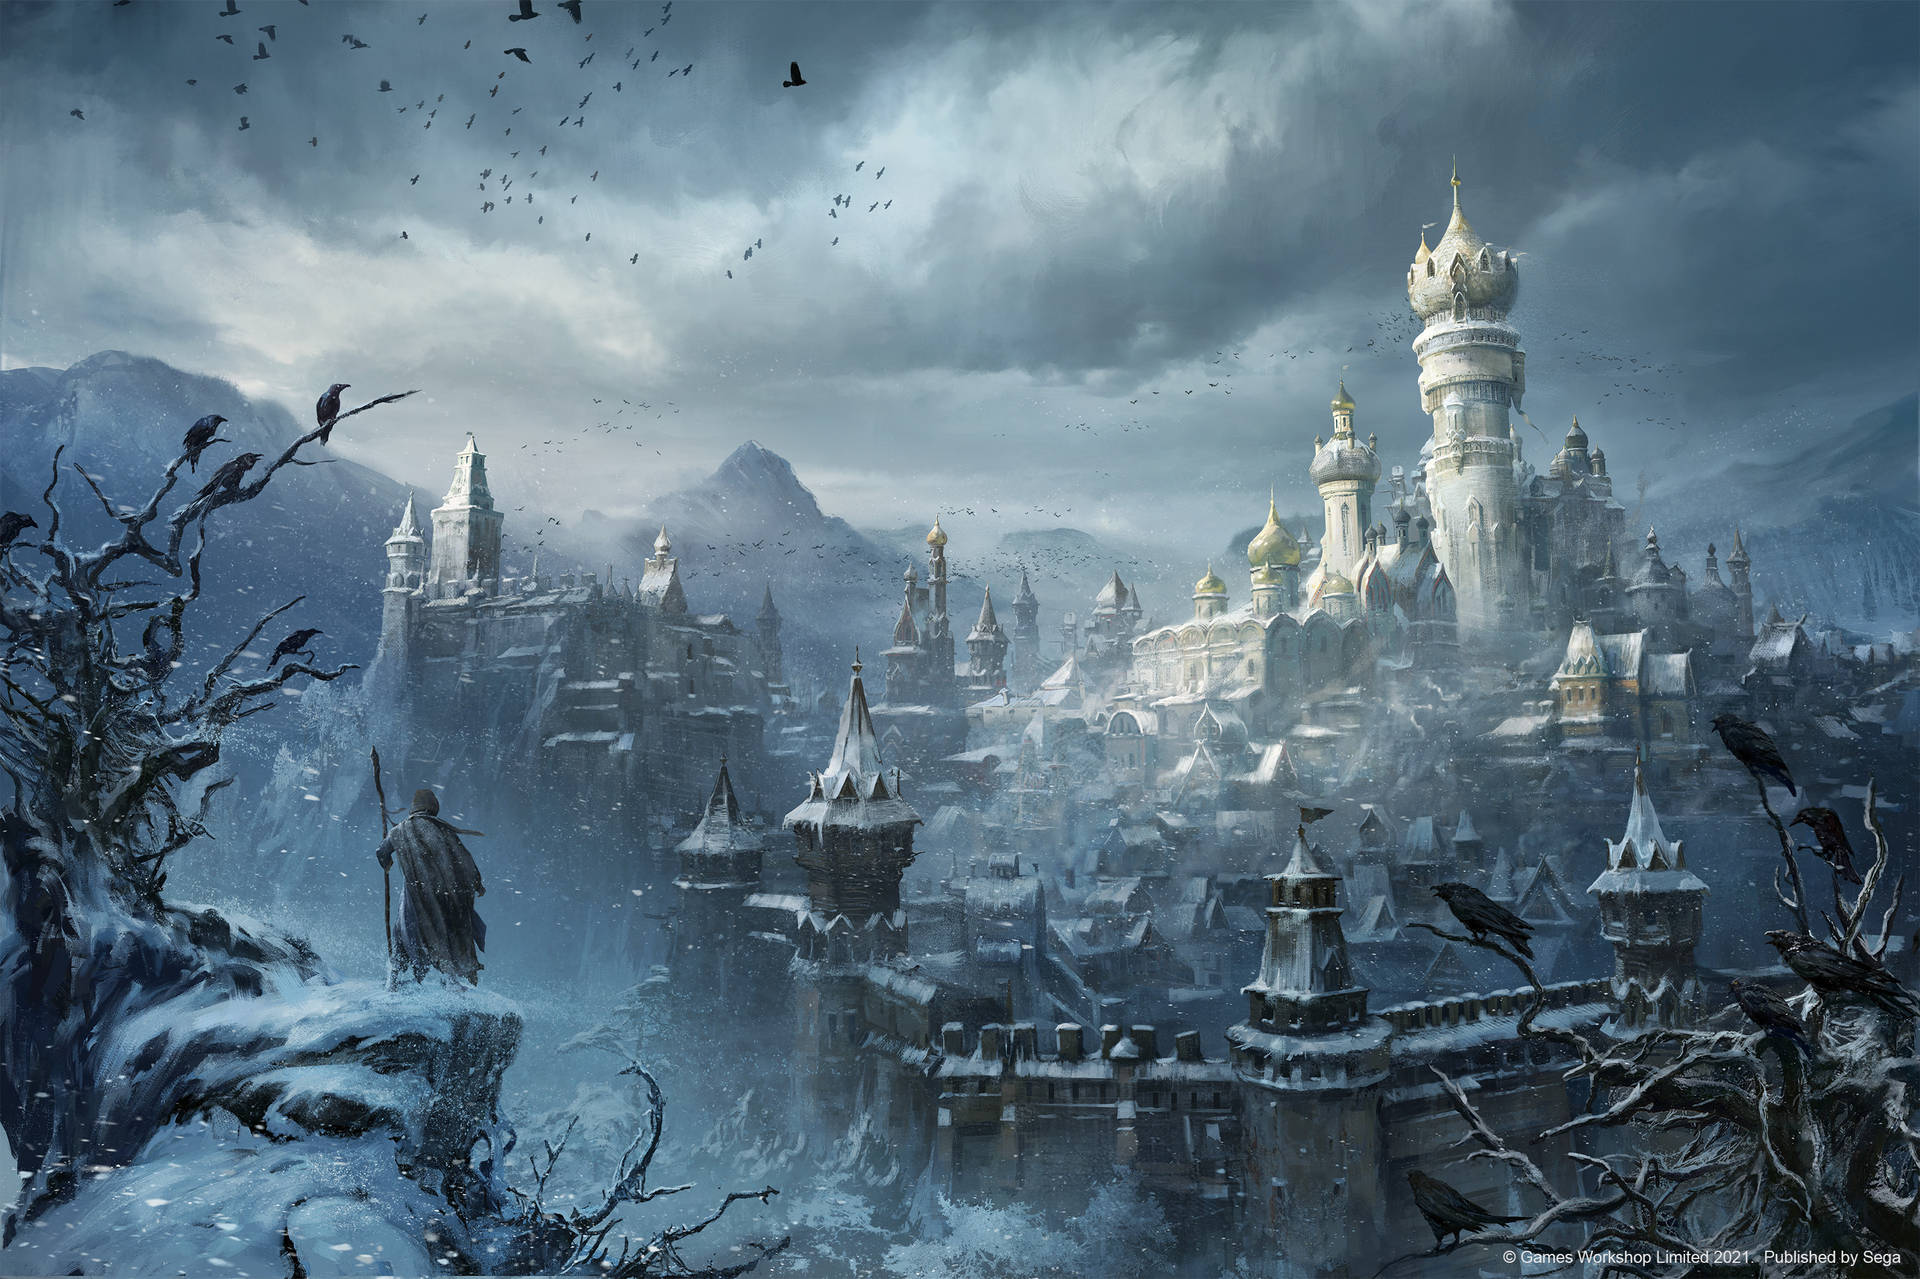 Warhammer Total War Iii Kislev Ice Kingdom